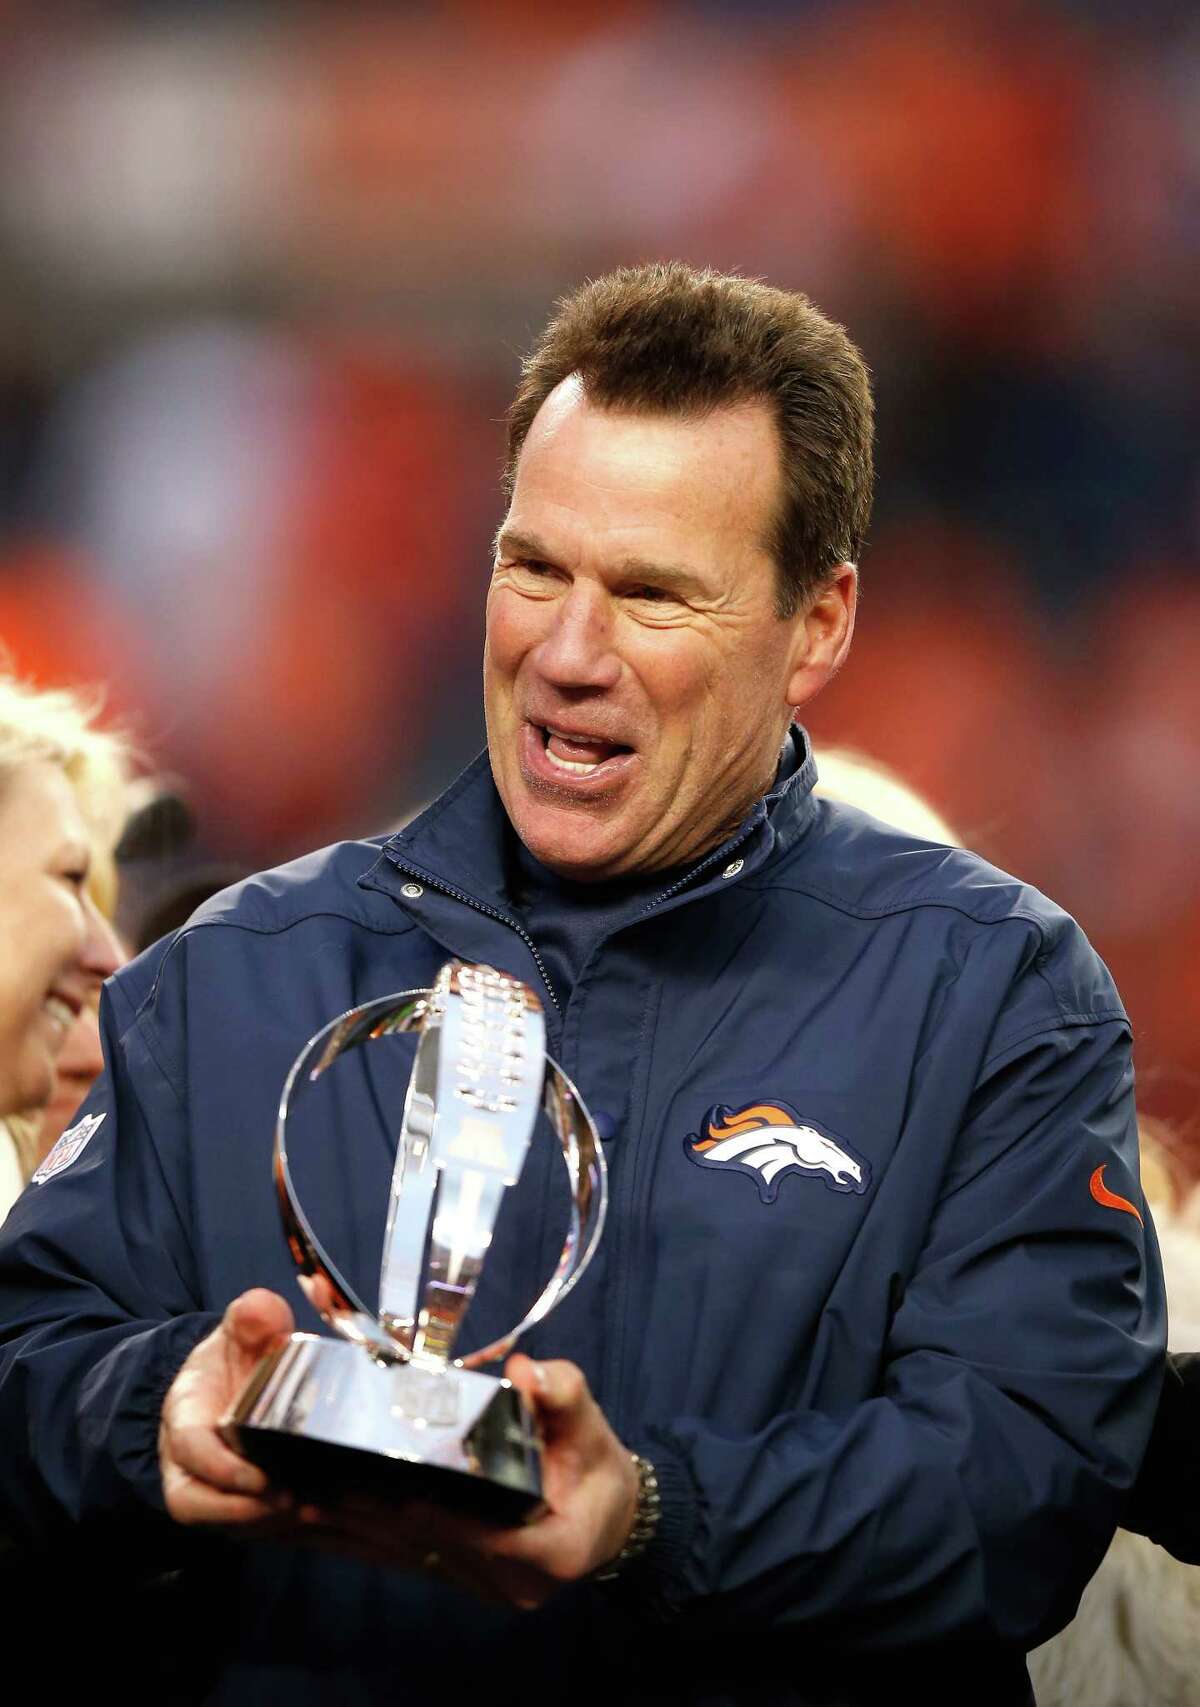 Inside the Denver Broncos' trophy case